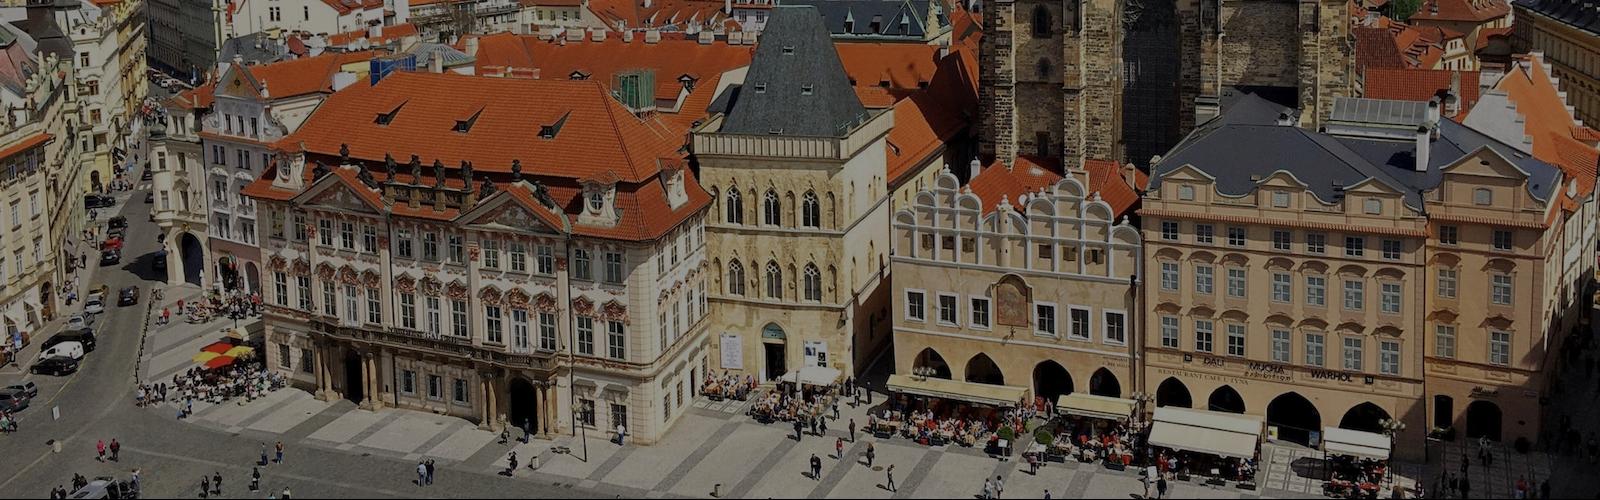 Обзорная авто-пешеходная экскурсия по Праге 